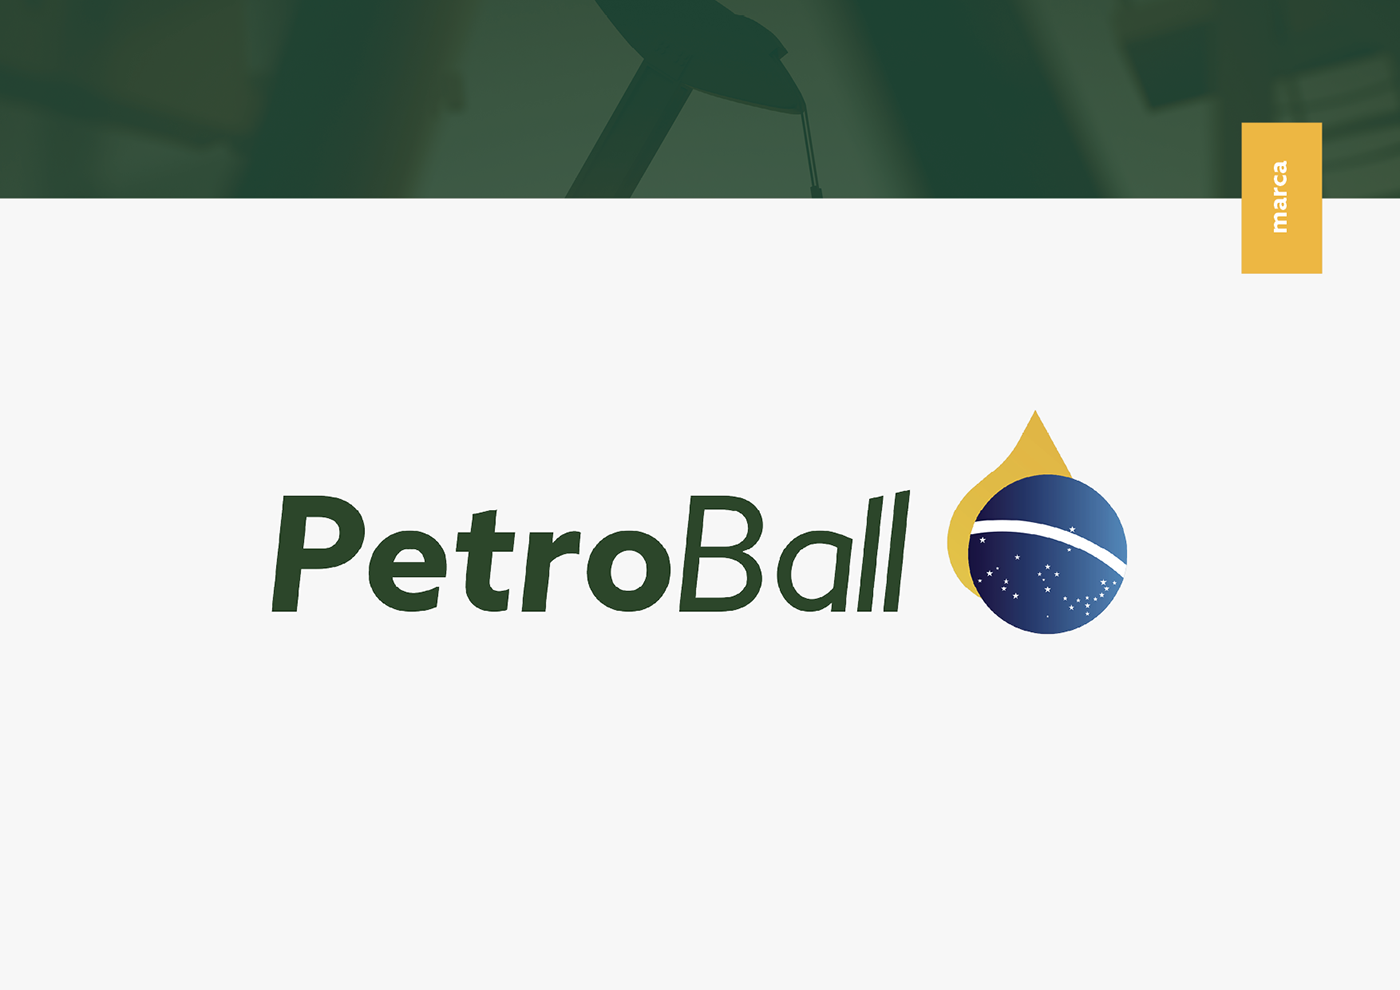 energia petroleo petrobras combustível Ribeião Preto são paulo Brasil nacional branding  marca